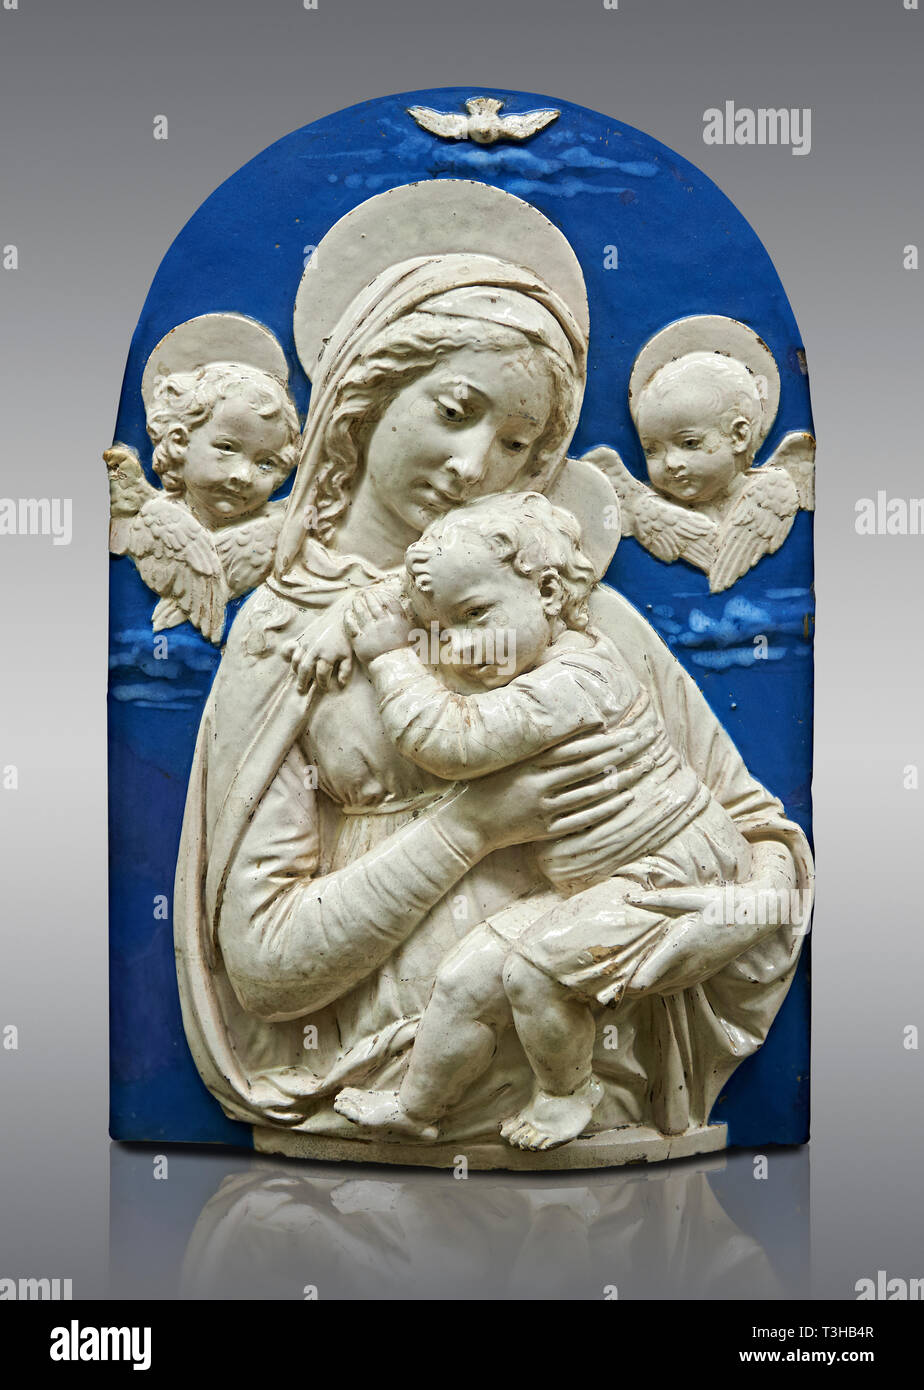 Terracotta smaltata pannello di rilievo della Vergine con il Bambino e i due putti una copia della Madonna de l'Impuuneta" di Luca della Robbia, Firenze 1399- Foto Stock